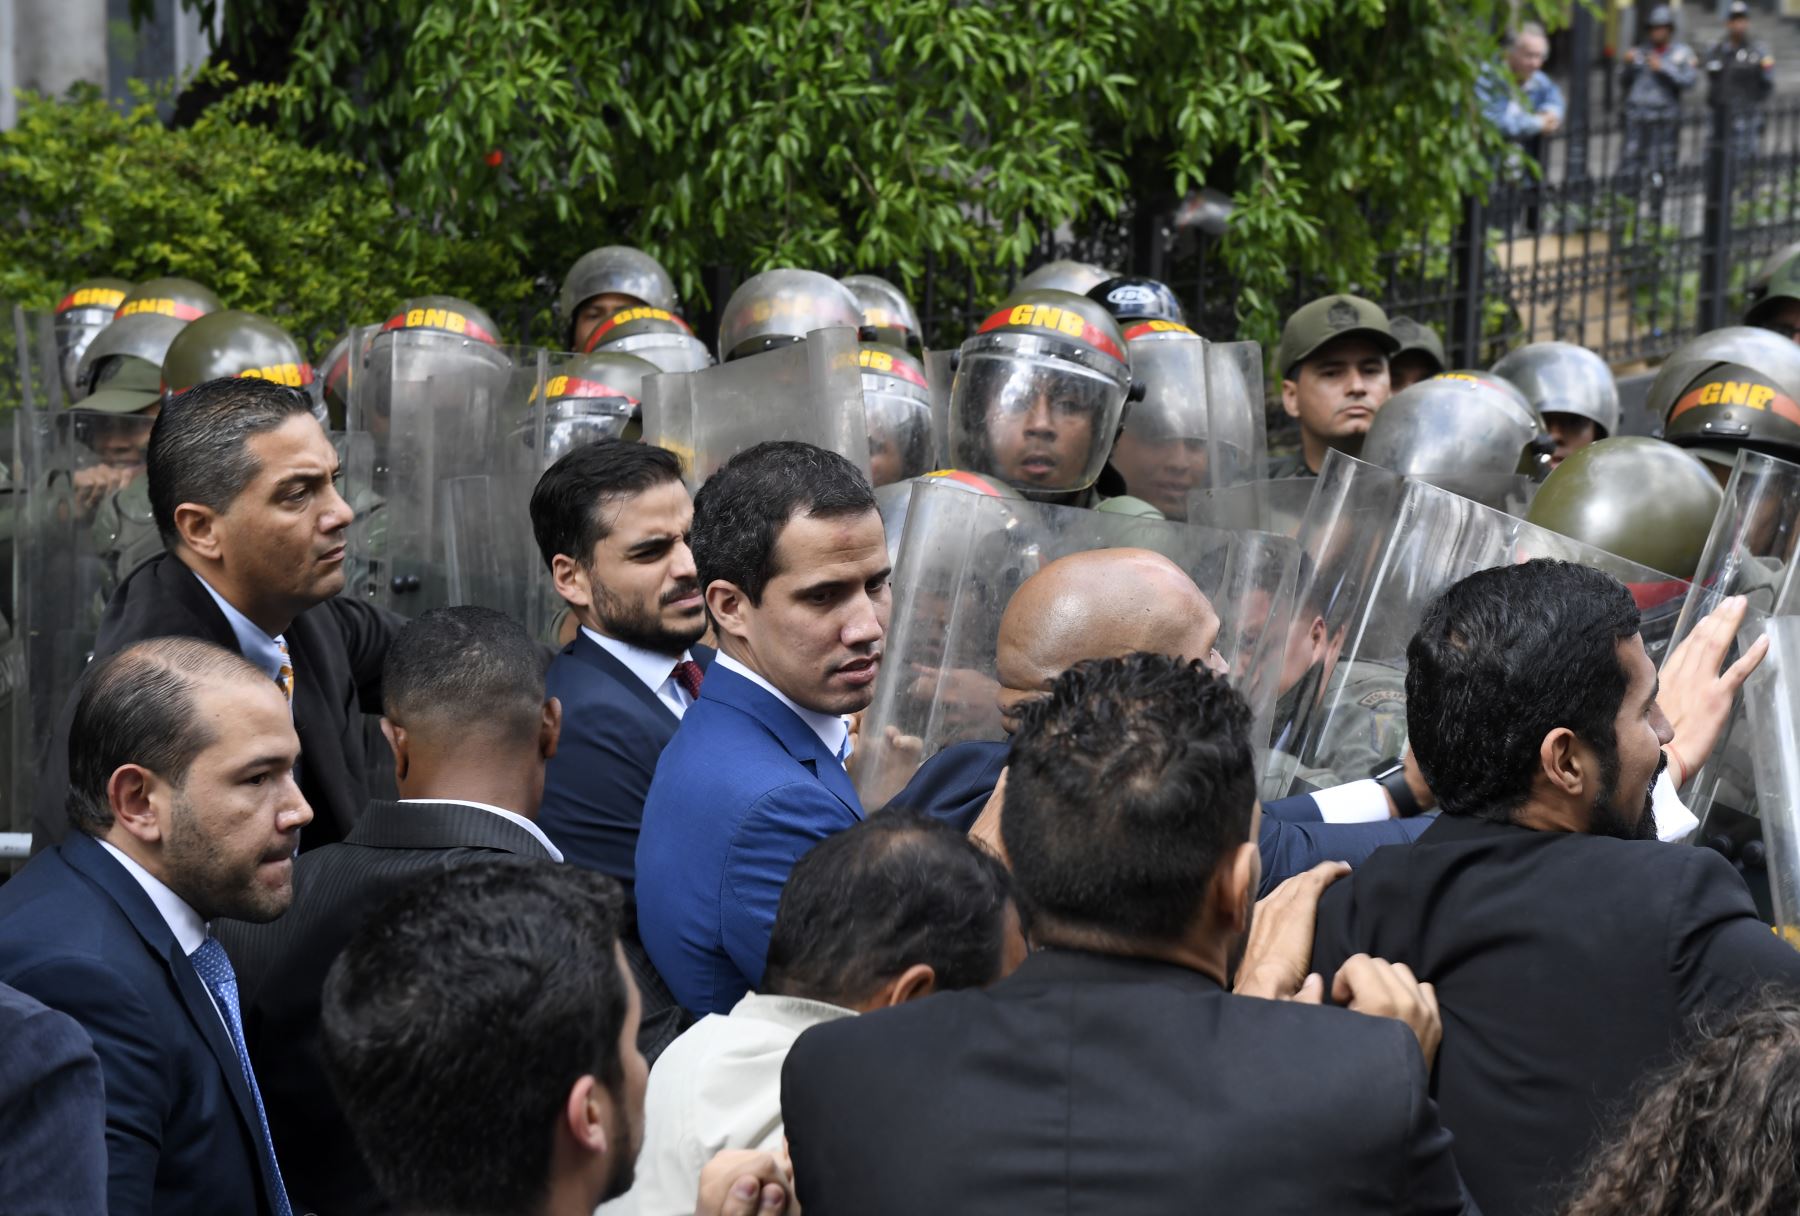 El líder de la oposición venezolana y el autoproclamado presidente interino Juan Guaido es bloqueado por las fuerzas de seguridad mientras intenta llegar al edificio de la Asamblea Nacional en Caracas.
Foto: AFP